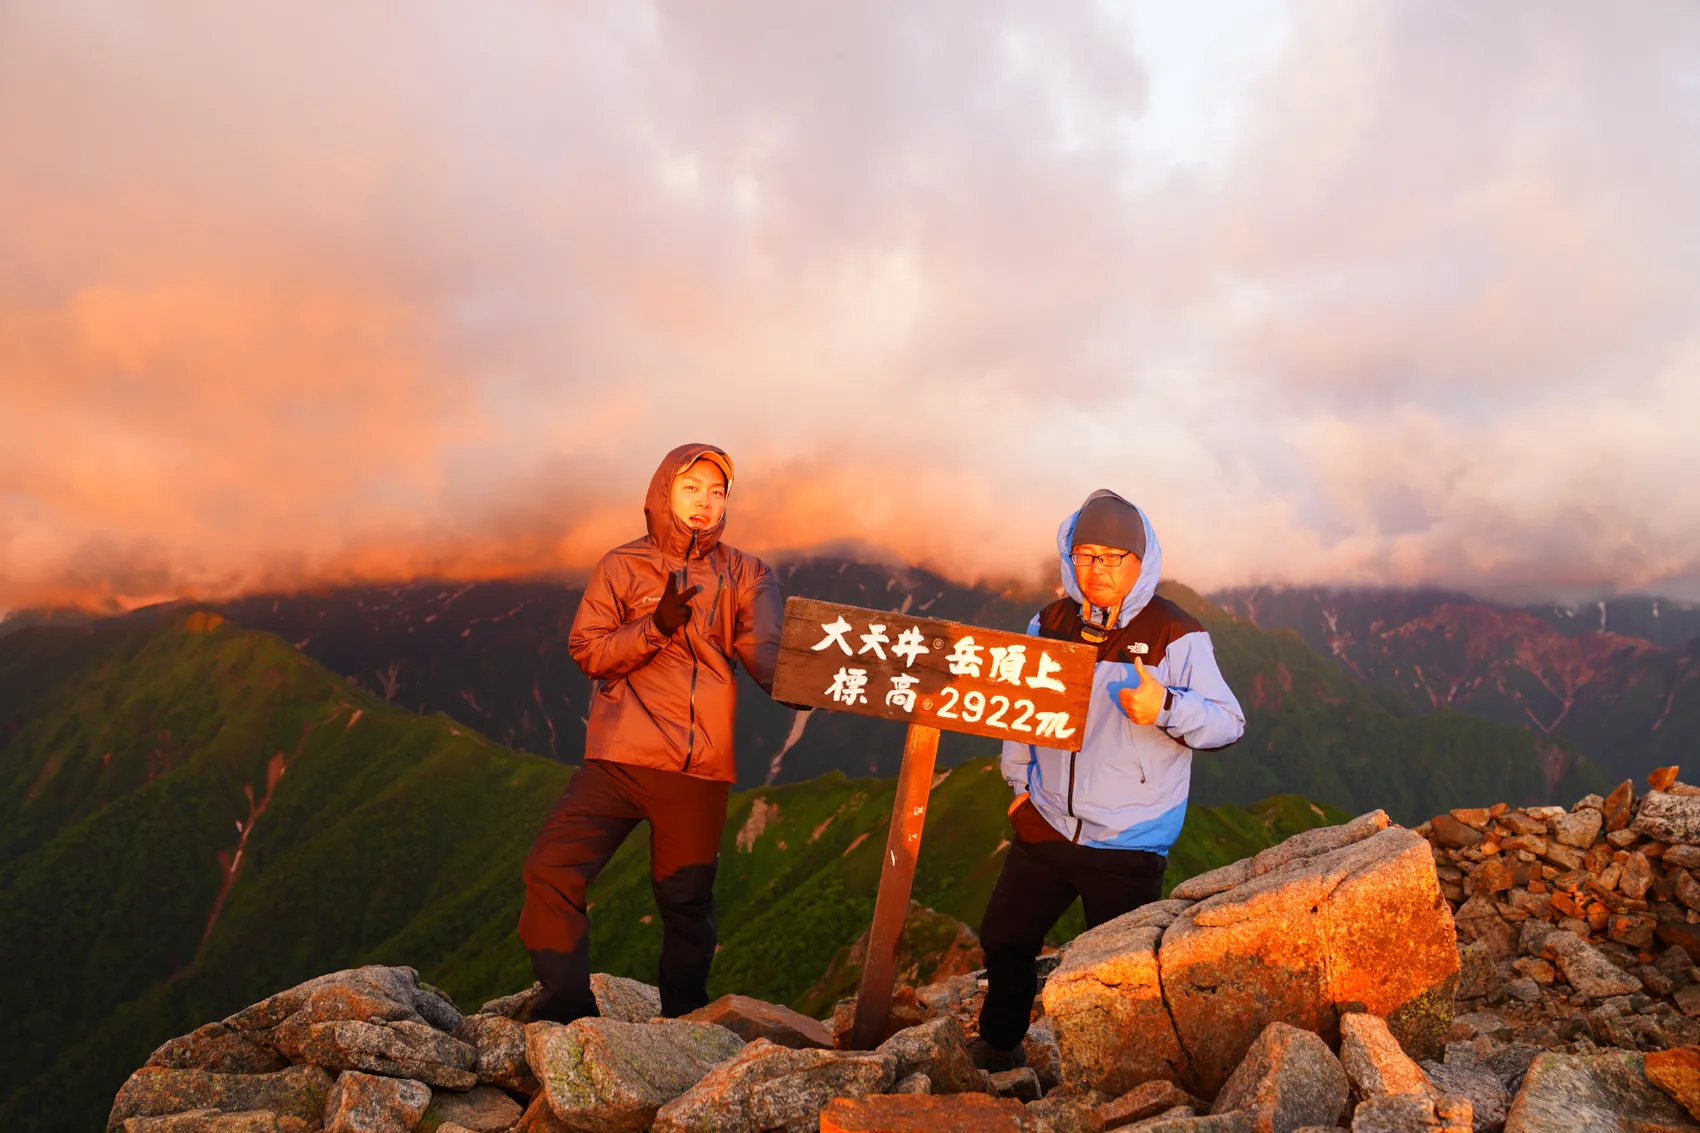 大天井岳 テント泊1泊2日登山